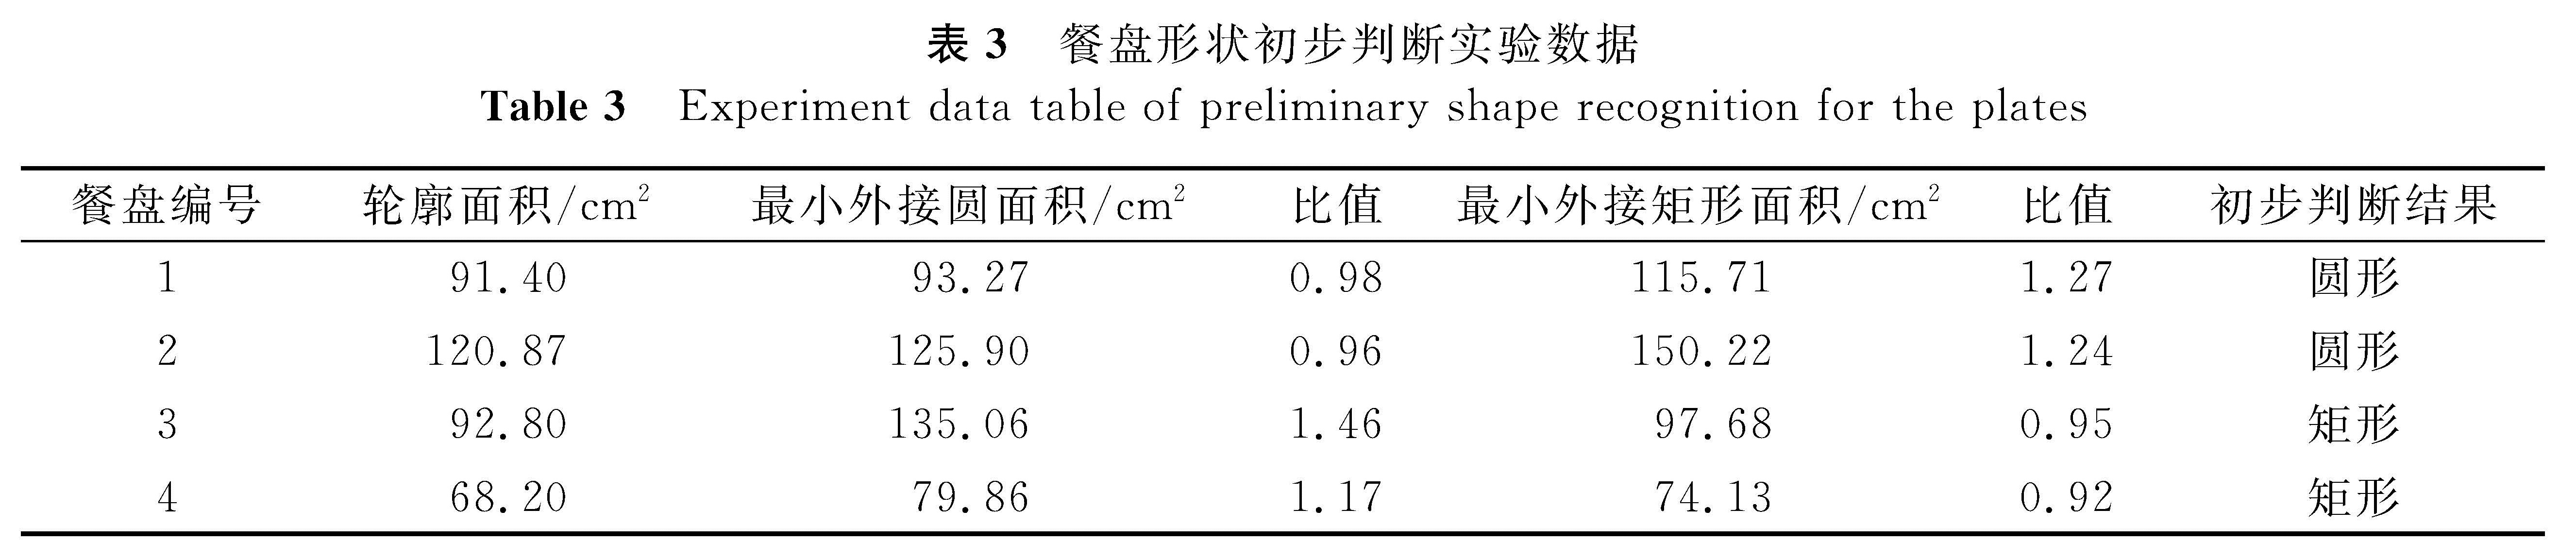 表3 餐盘形状初步判断实验数据<br/>Table 3 Experiment data table of preliminary shape recognition for the plates